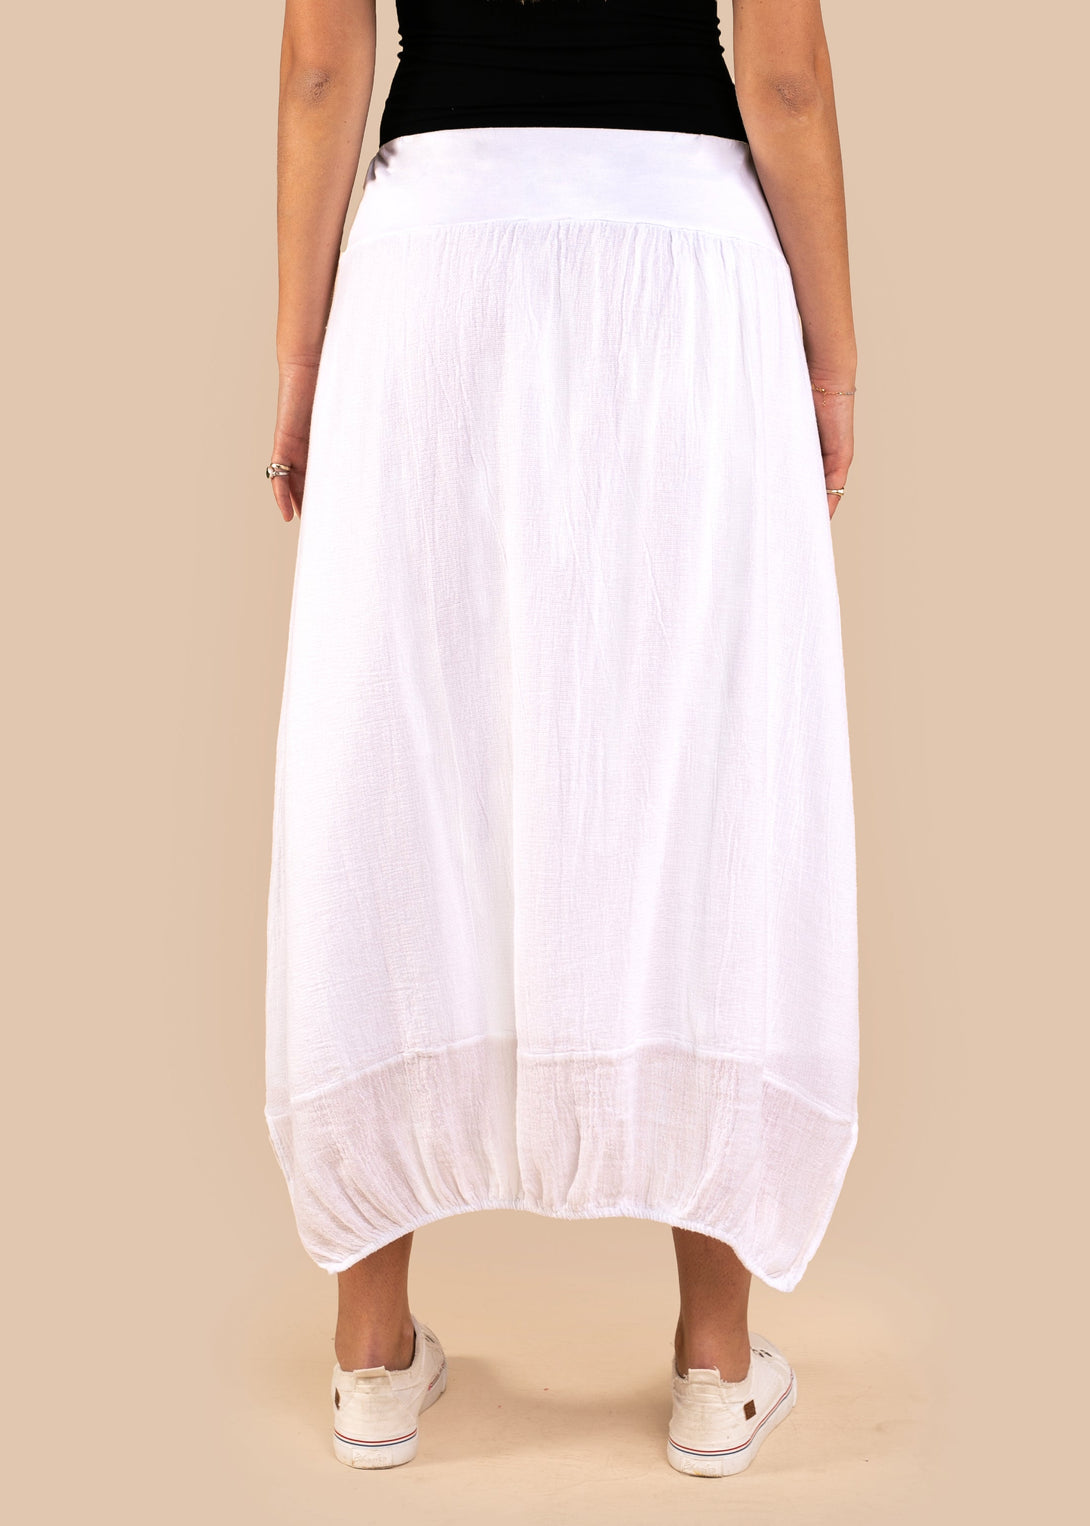 Leela Linen Skirt in White - Imagine Fashion